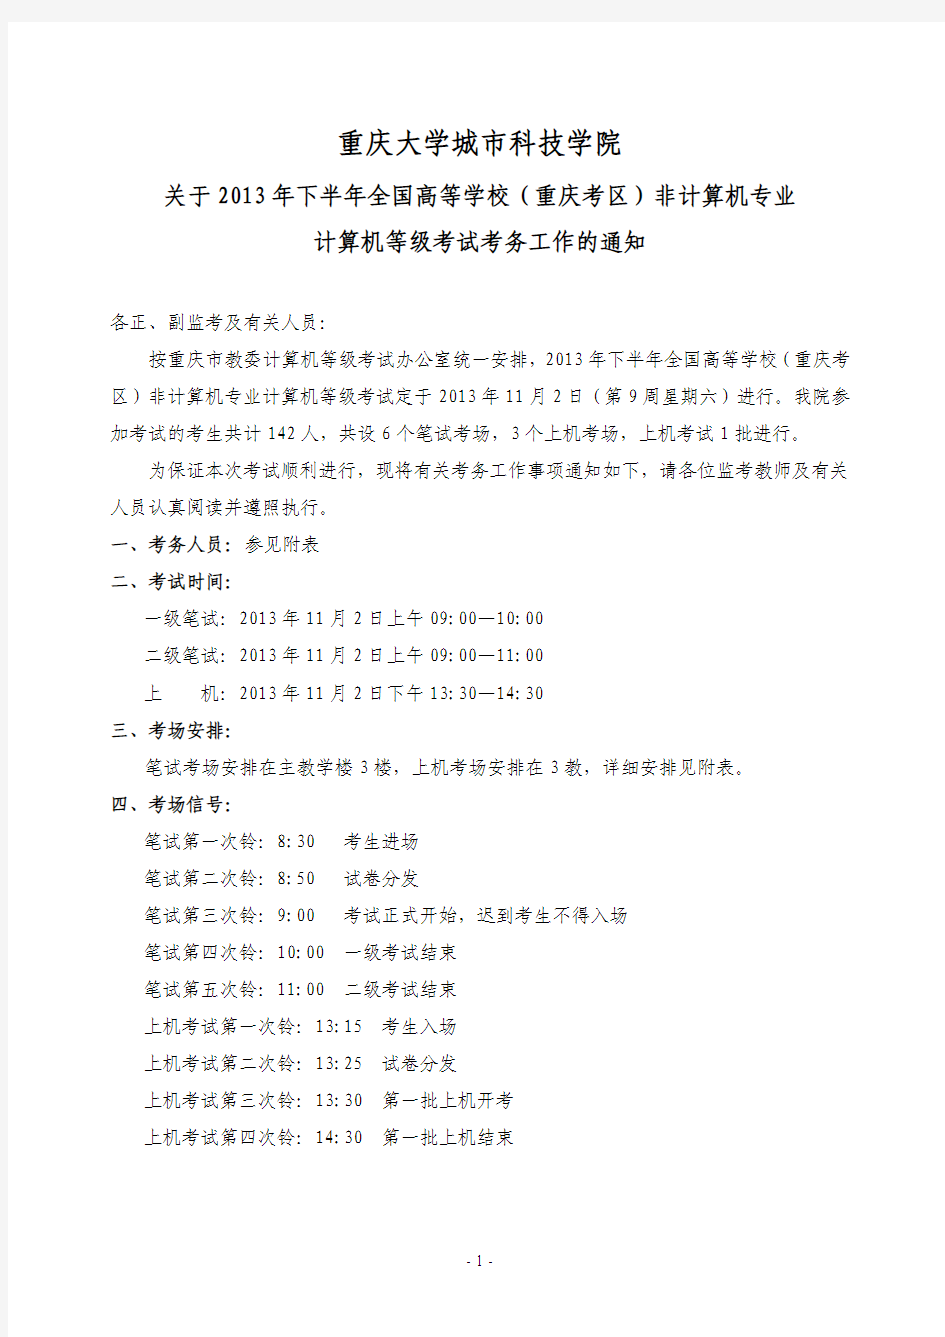 全国高等学校(重庆考区)非计算机专业计算机等级考试安排表